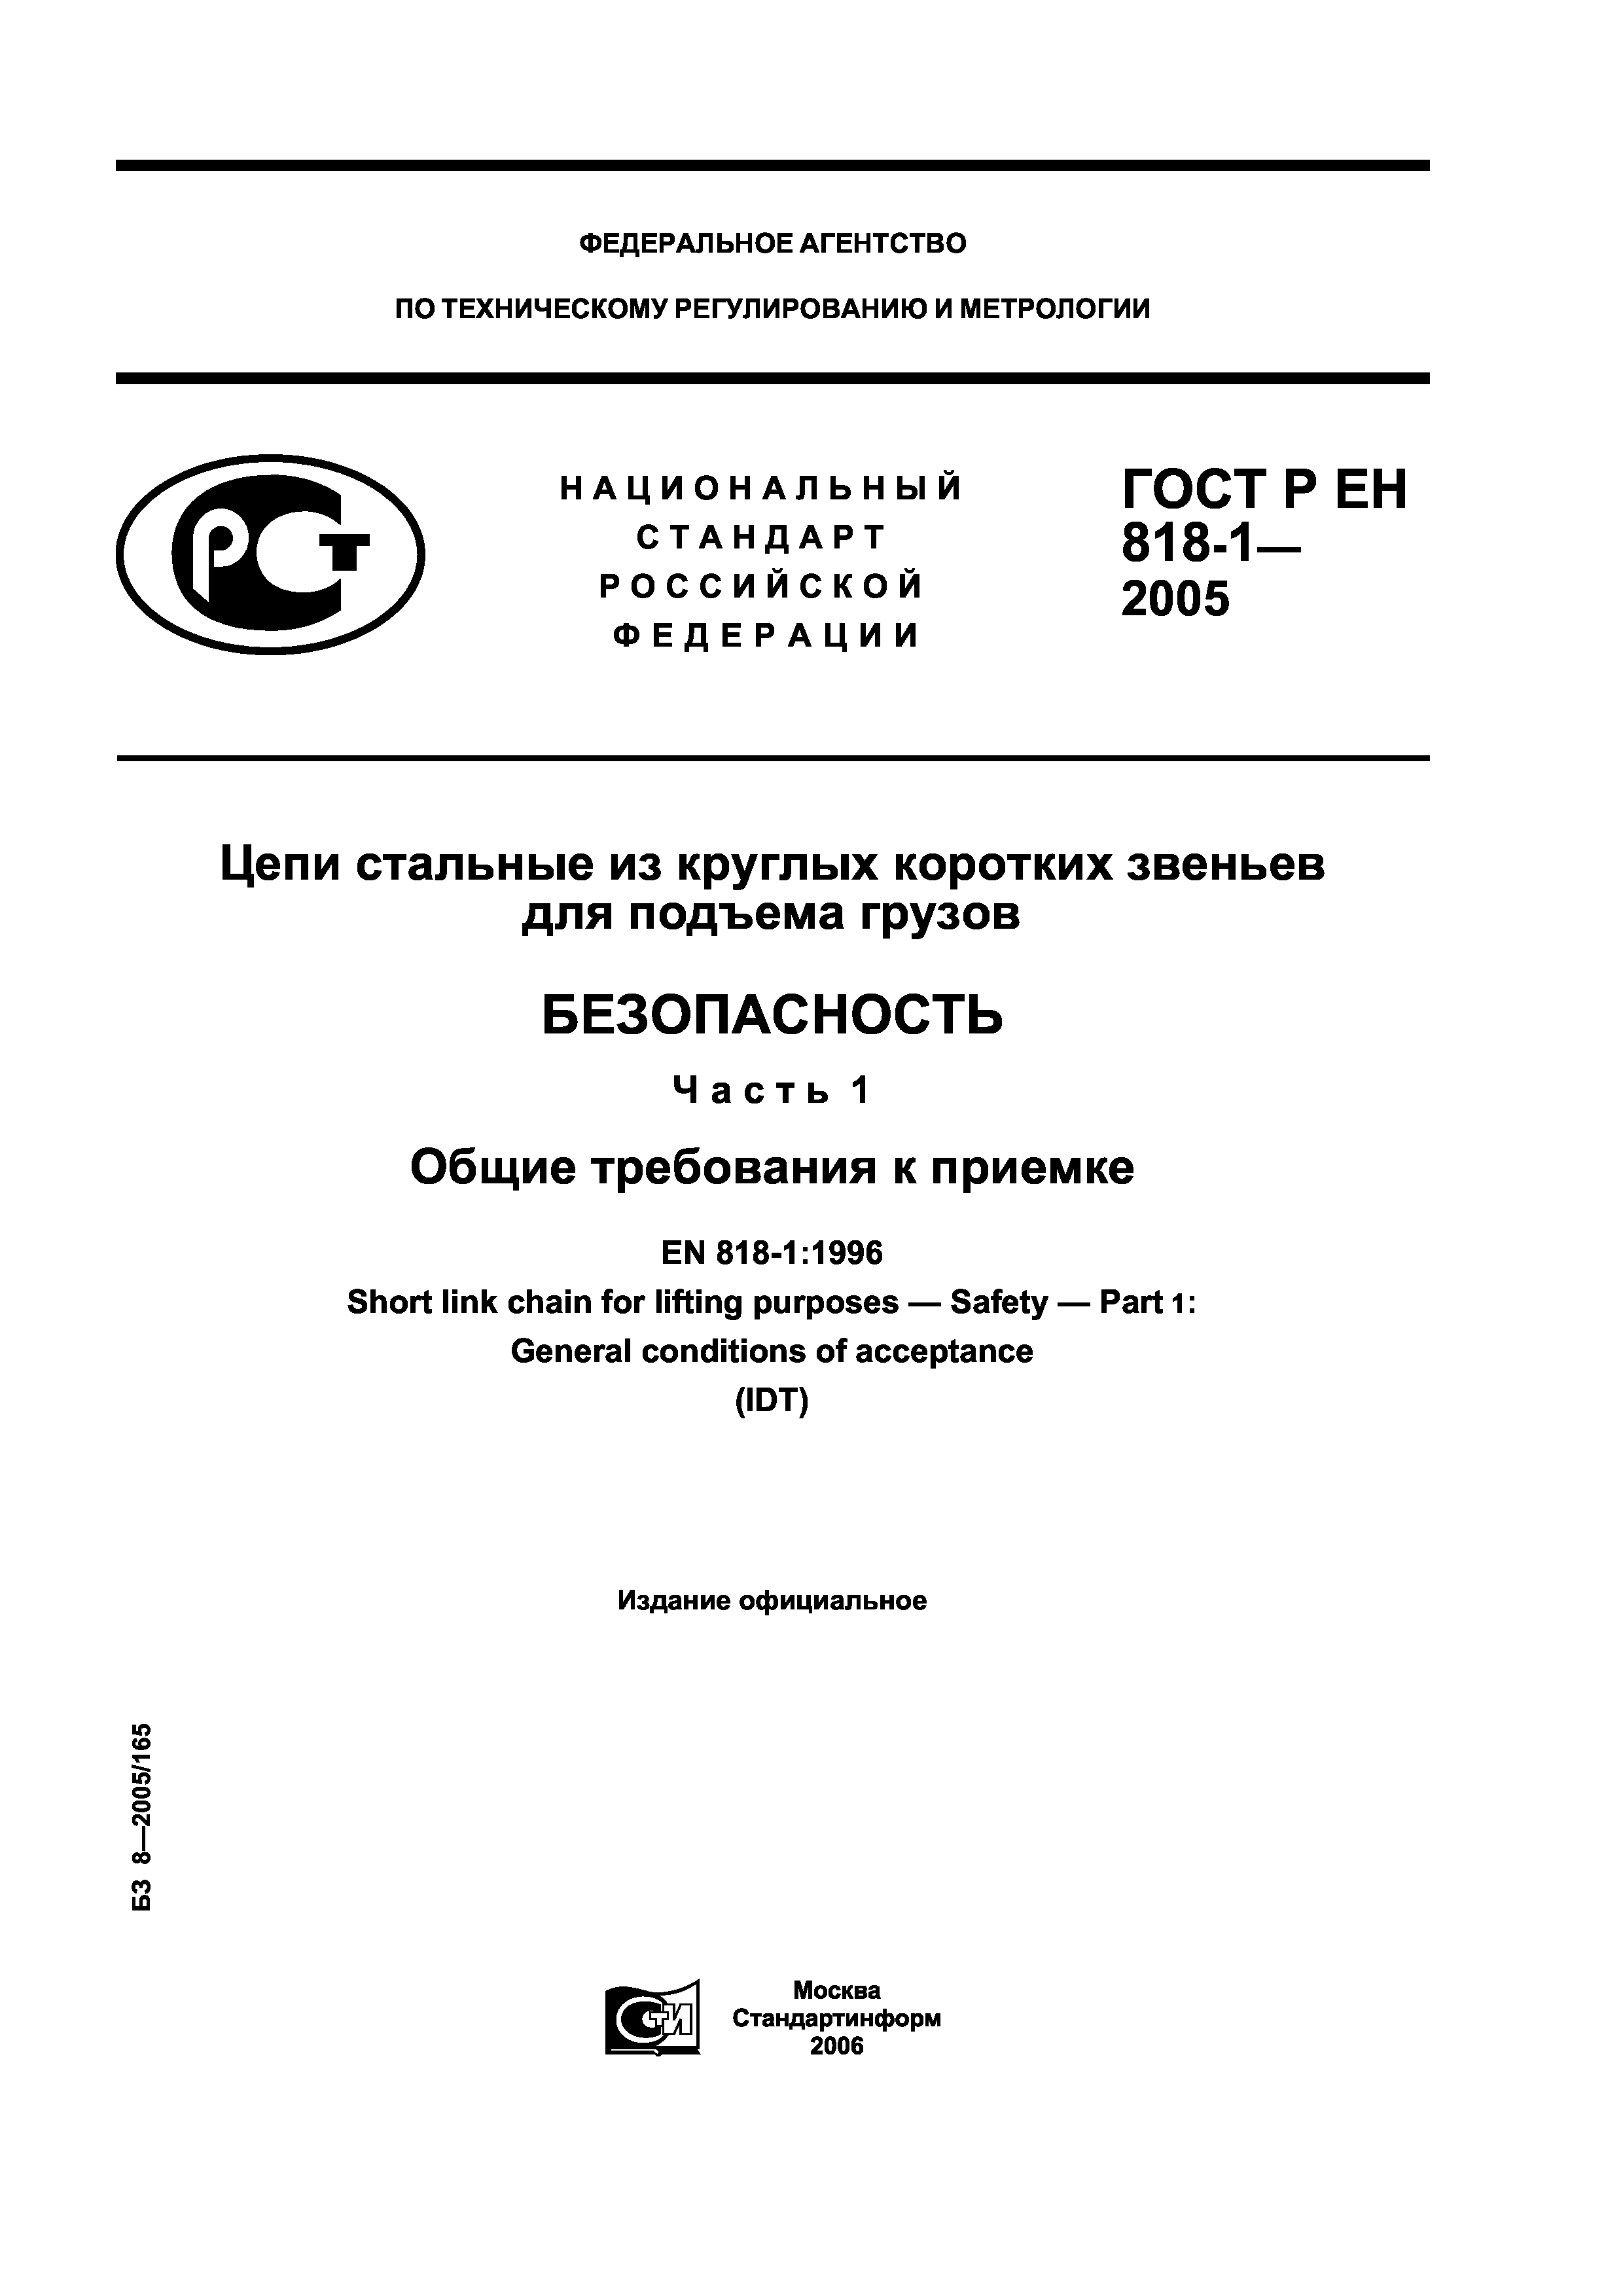 ГОСТ Р ЕН 818-1-2005